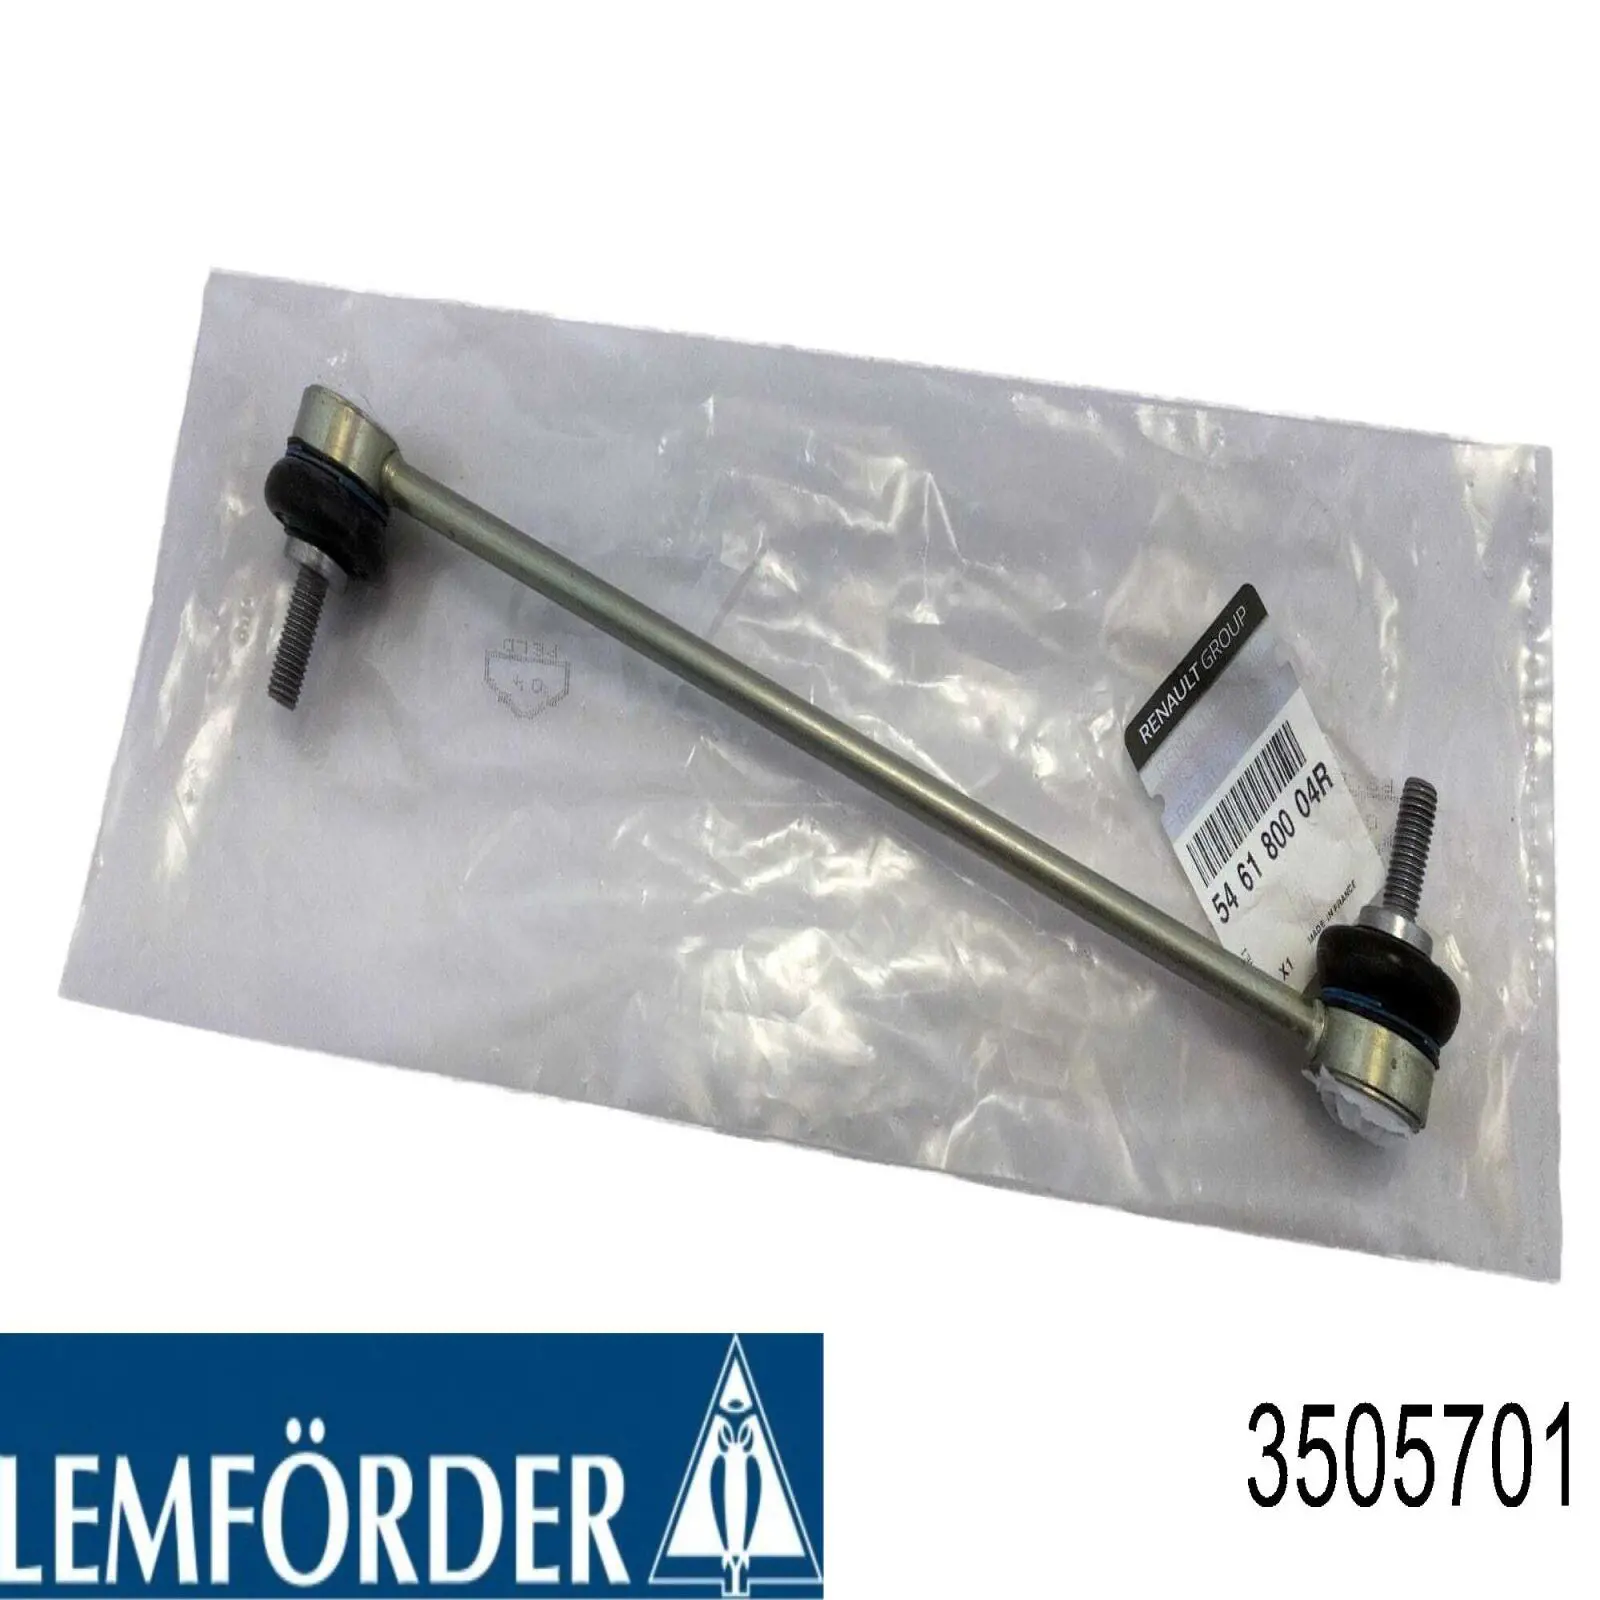 35057 01 Lemforder soporte de barra estabilizadora delantera